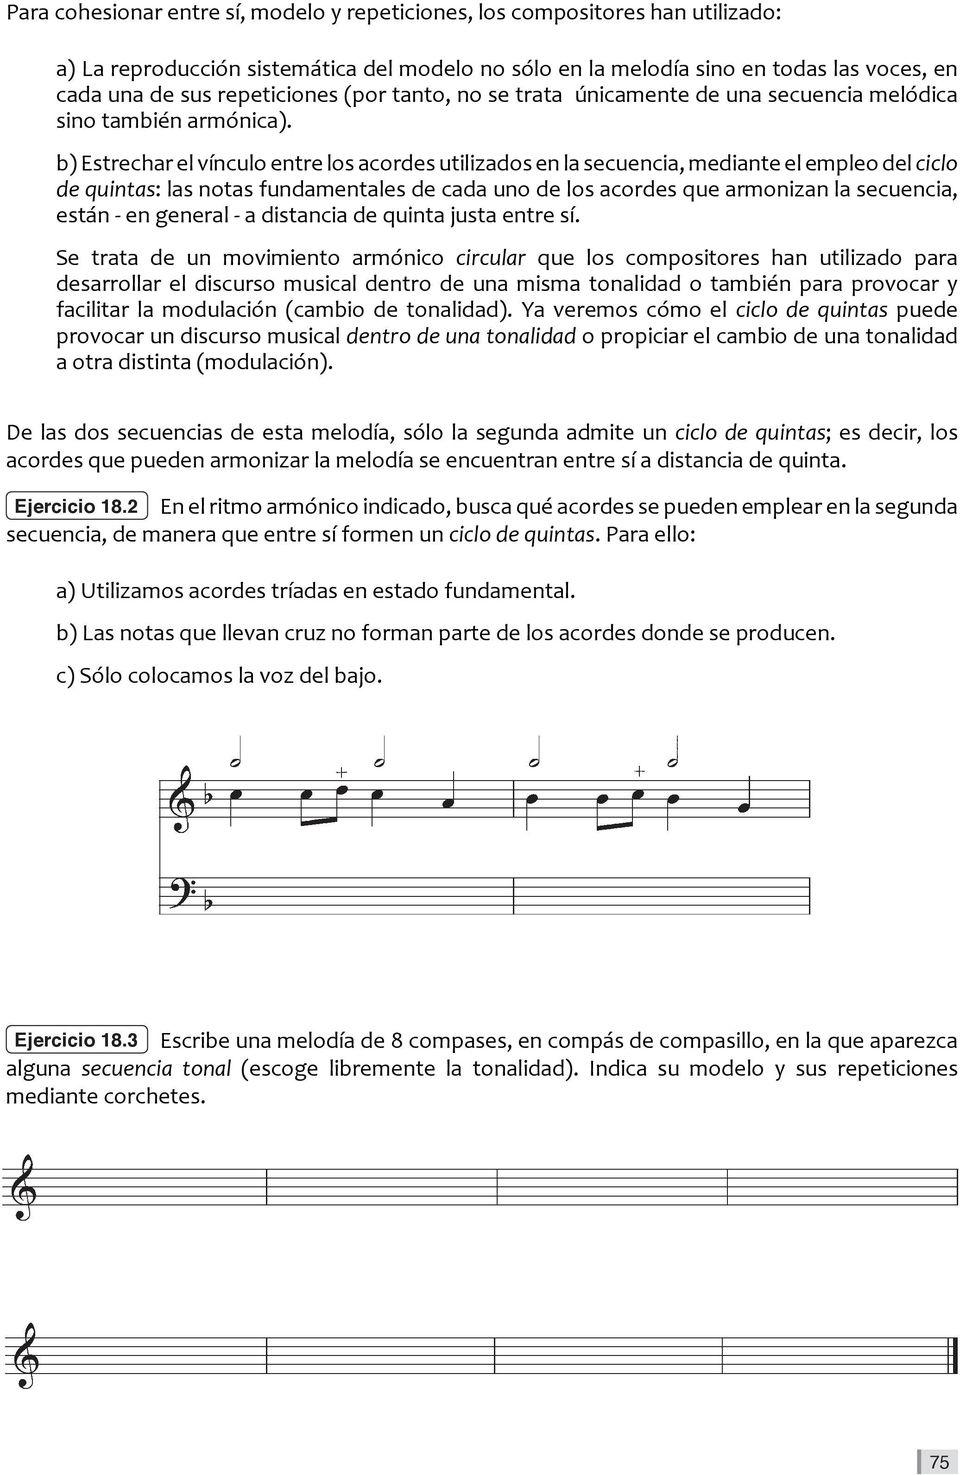 b) Estrechar el vínculo entre los acordes utilizados en la secuencia, mediante el empleo del ciclo de quintas: las notas fundamentales de cada uno de los acordes que armonizan la secuencia, están -